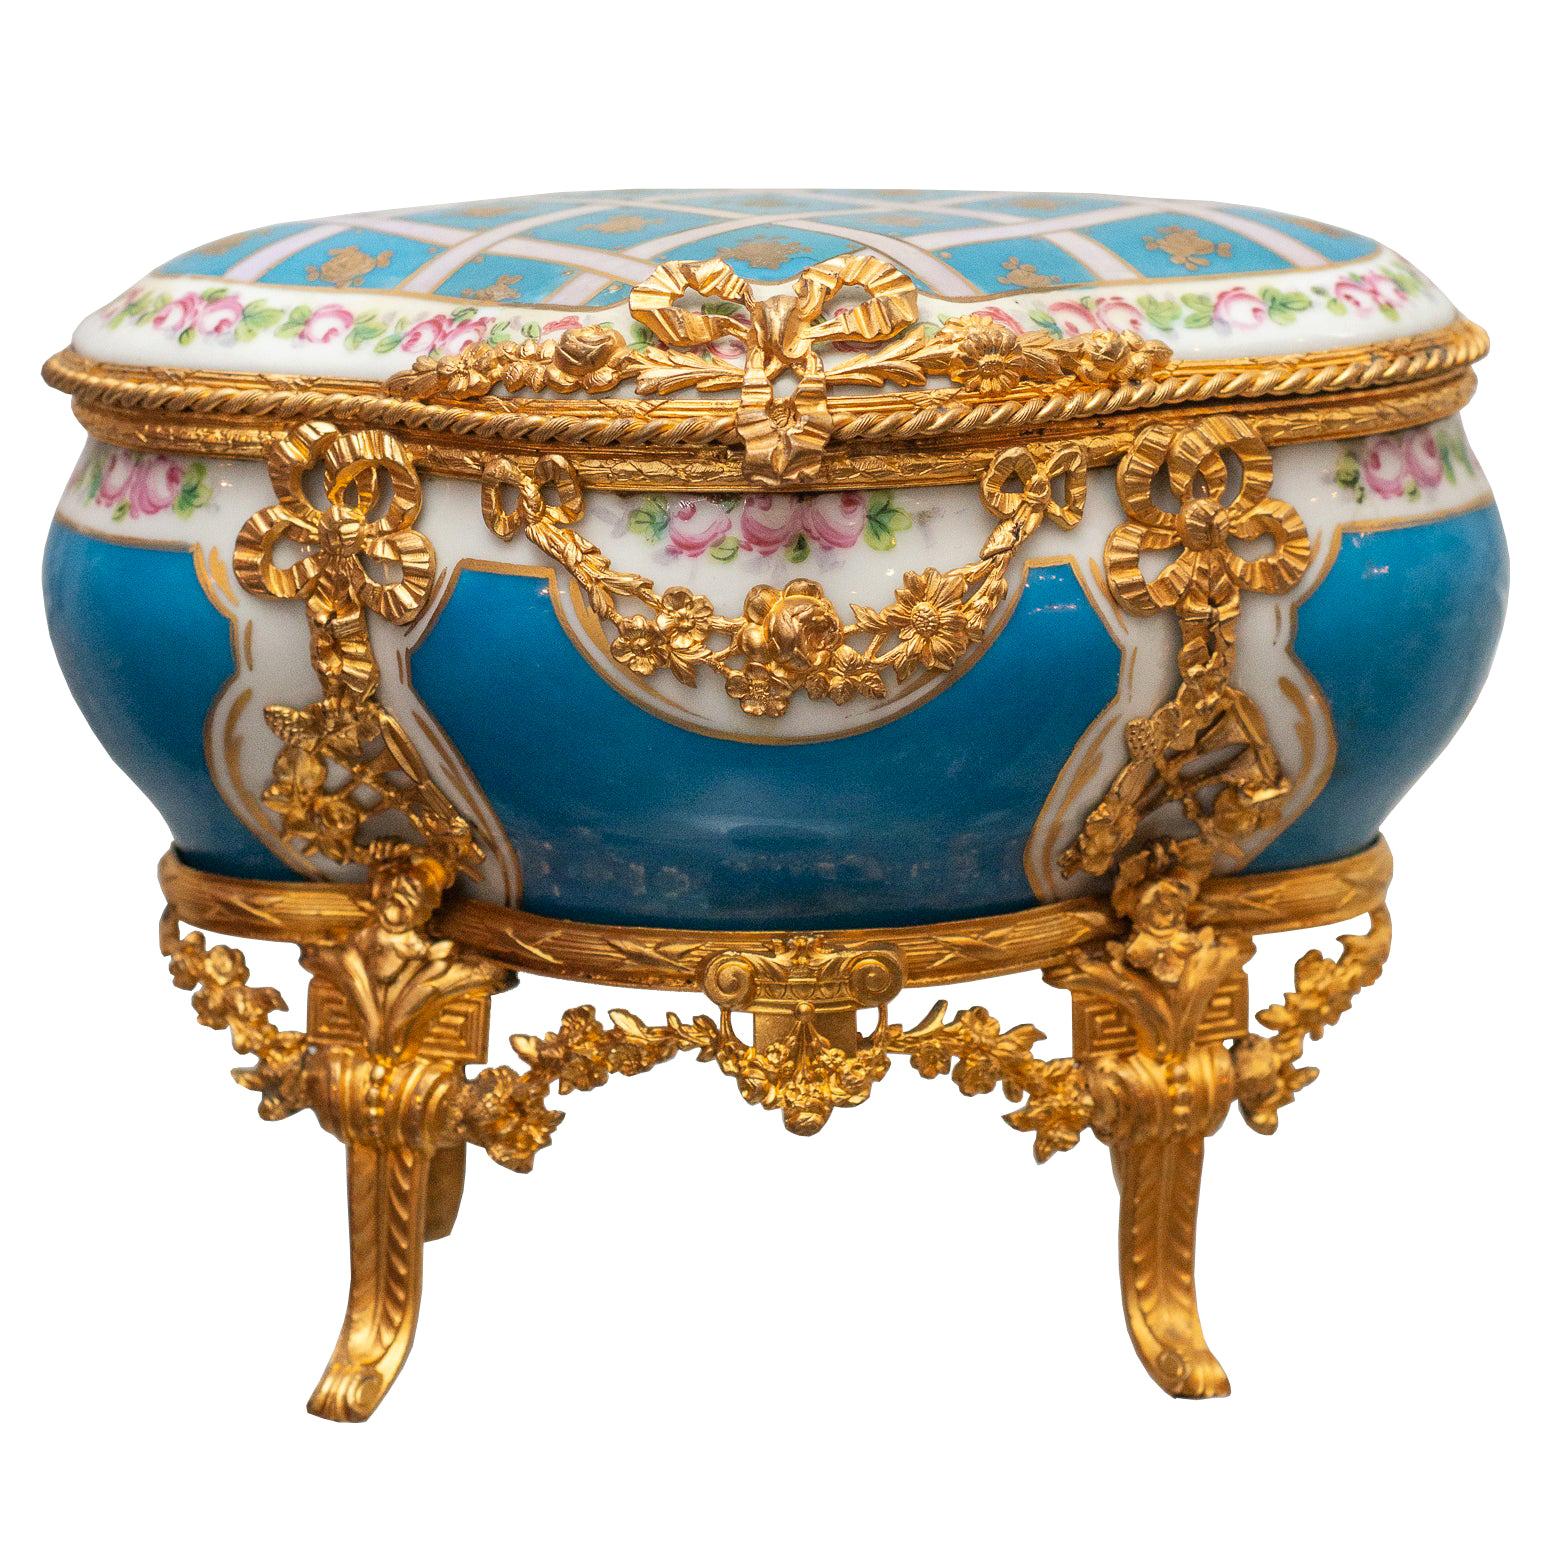 Antique Sévres Bleu Celeste Porcelain Jewelry Casket with Gold Ormolu Details